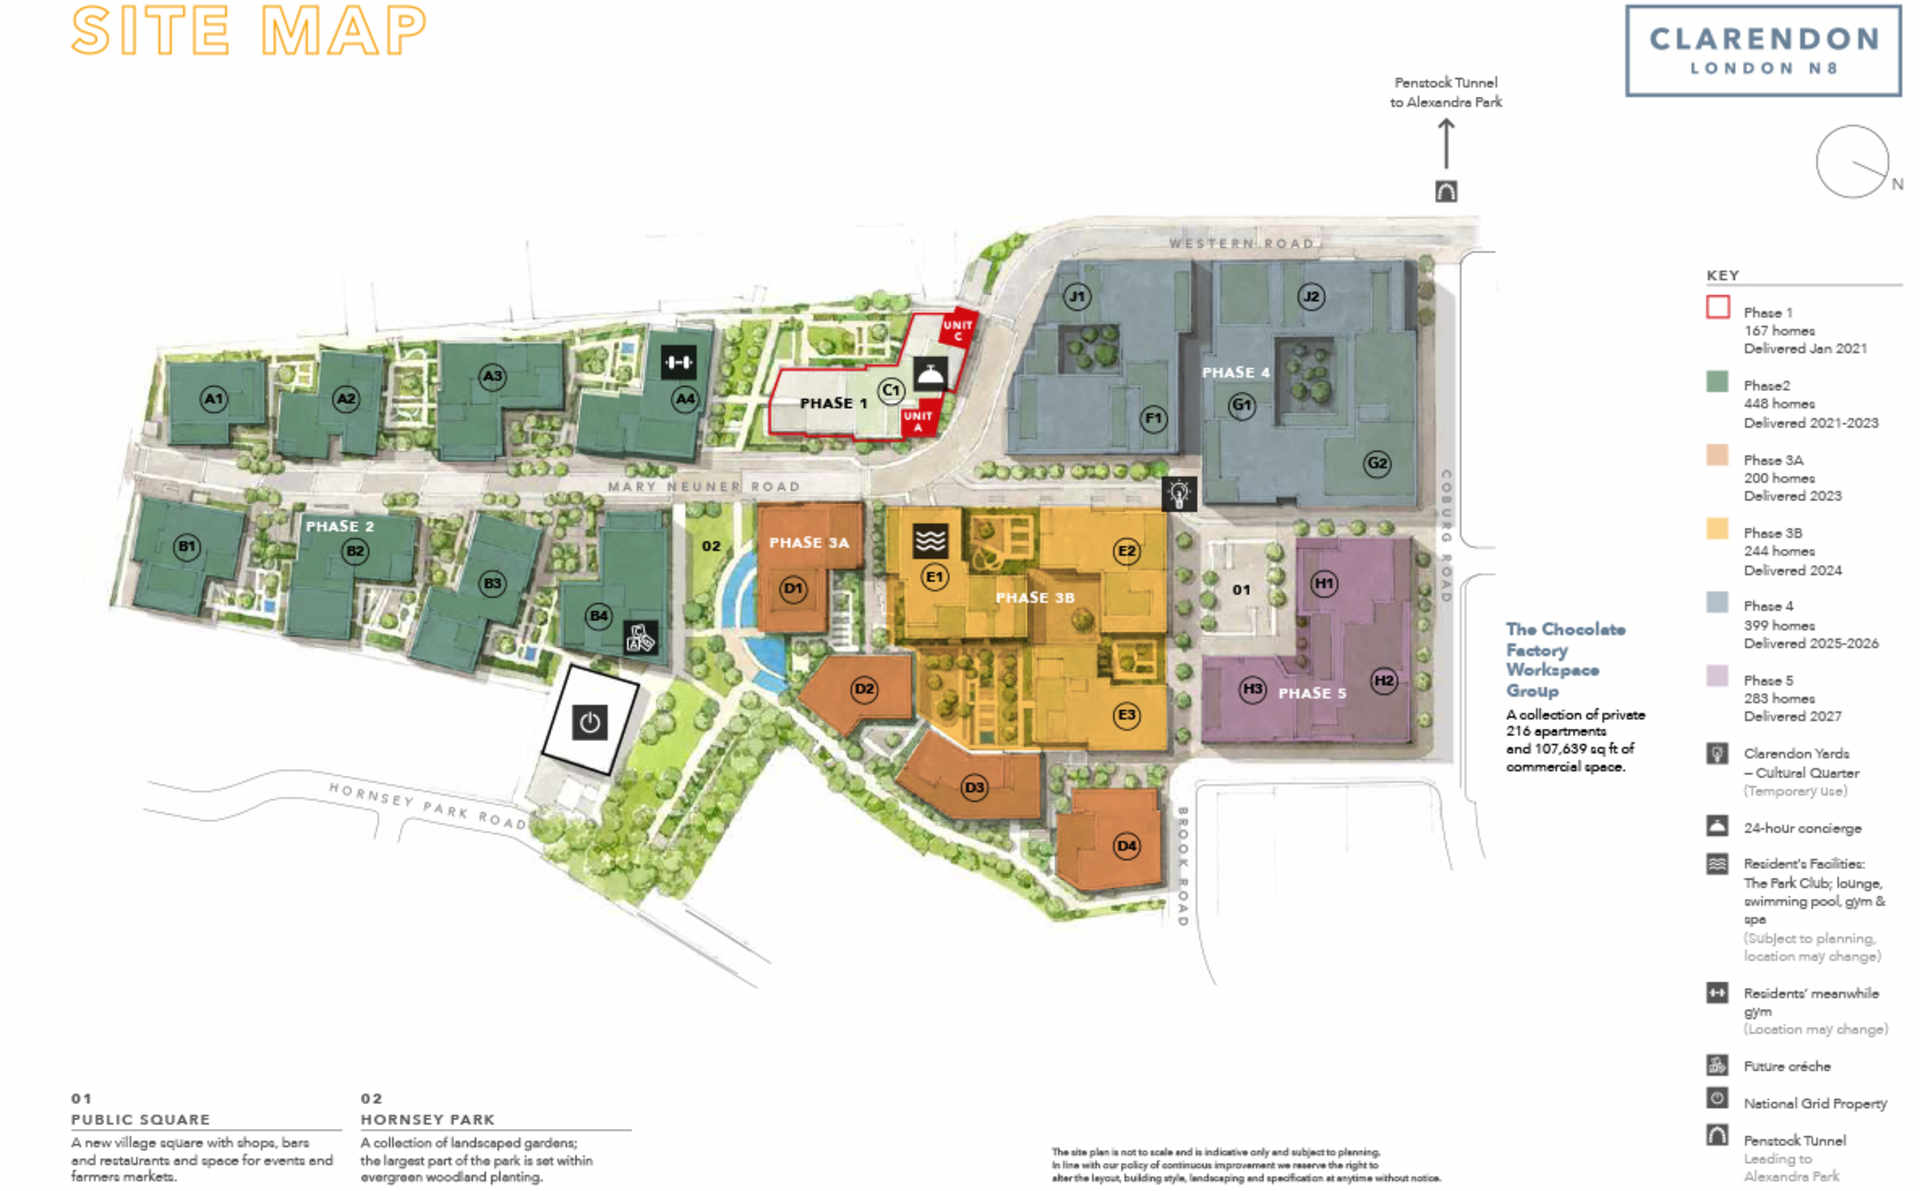 St William, Clarendon, Commercial Units, Site Plan